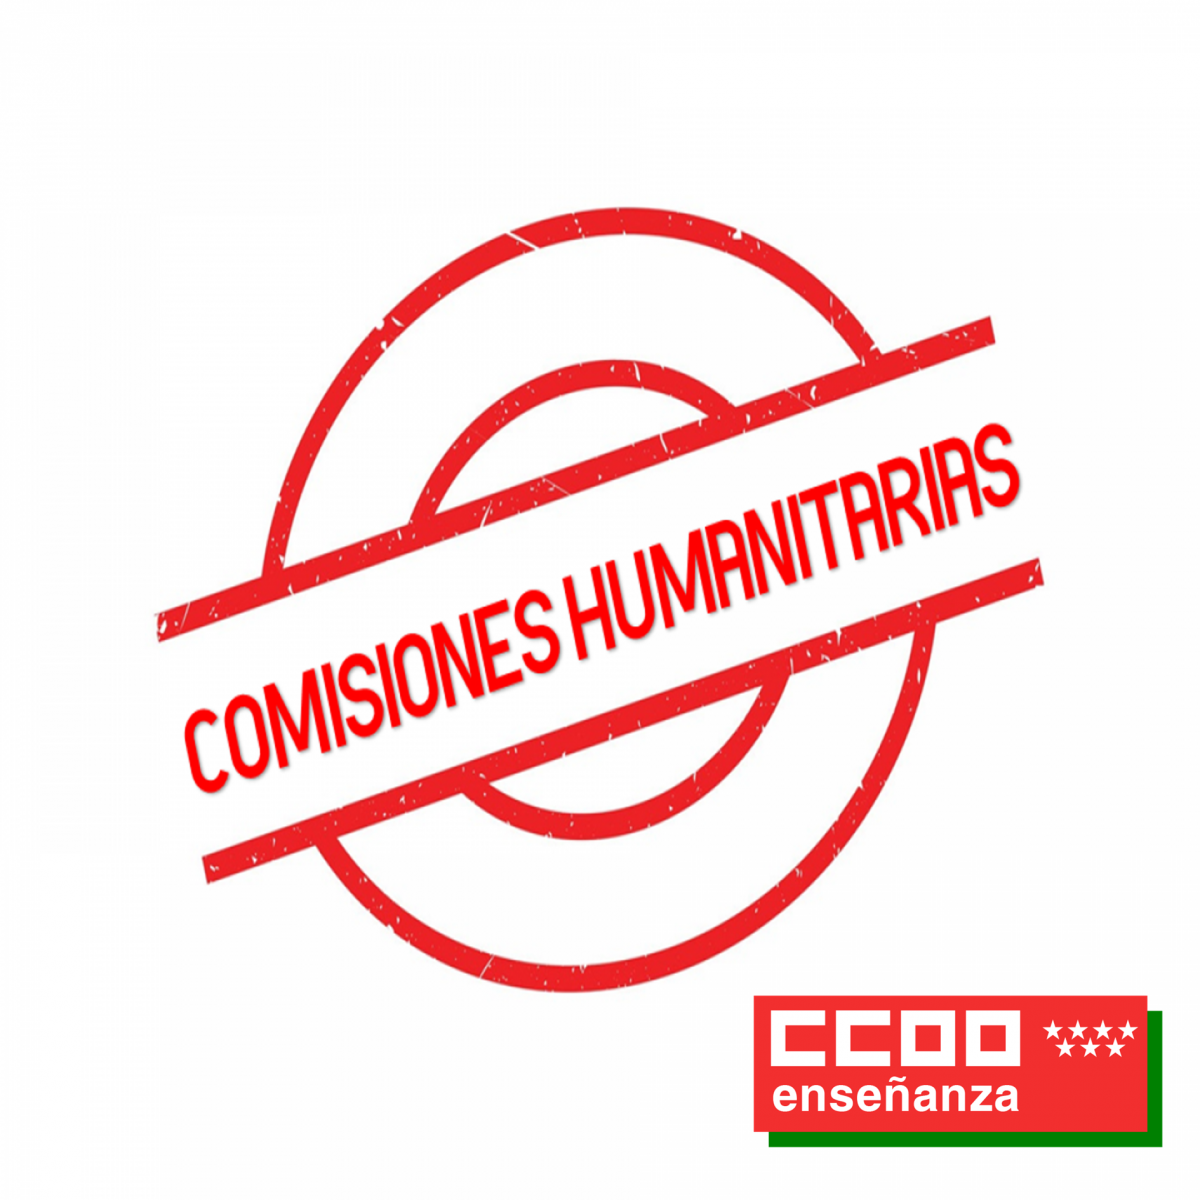 Comisiones humanitarias